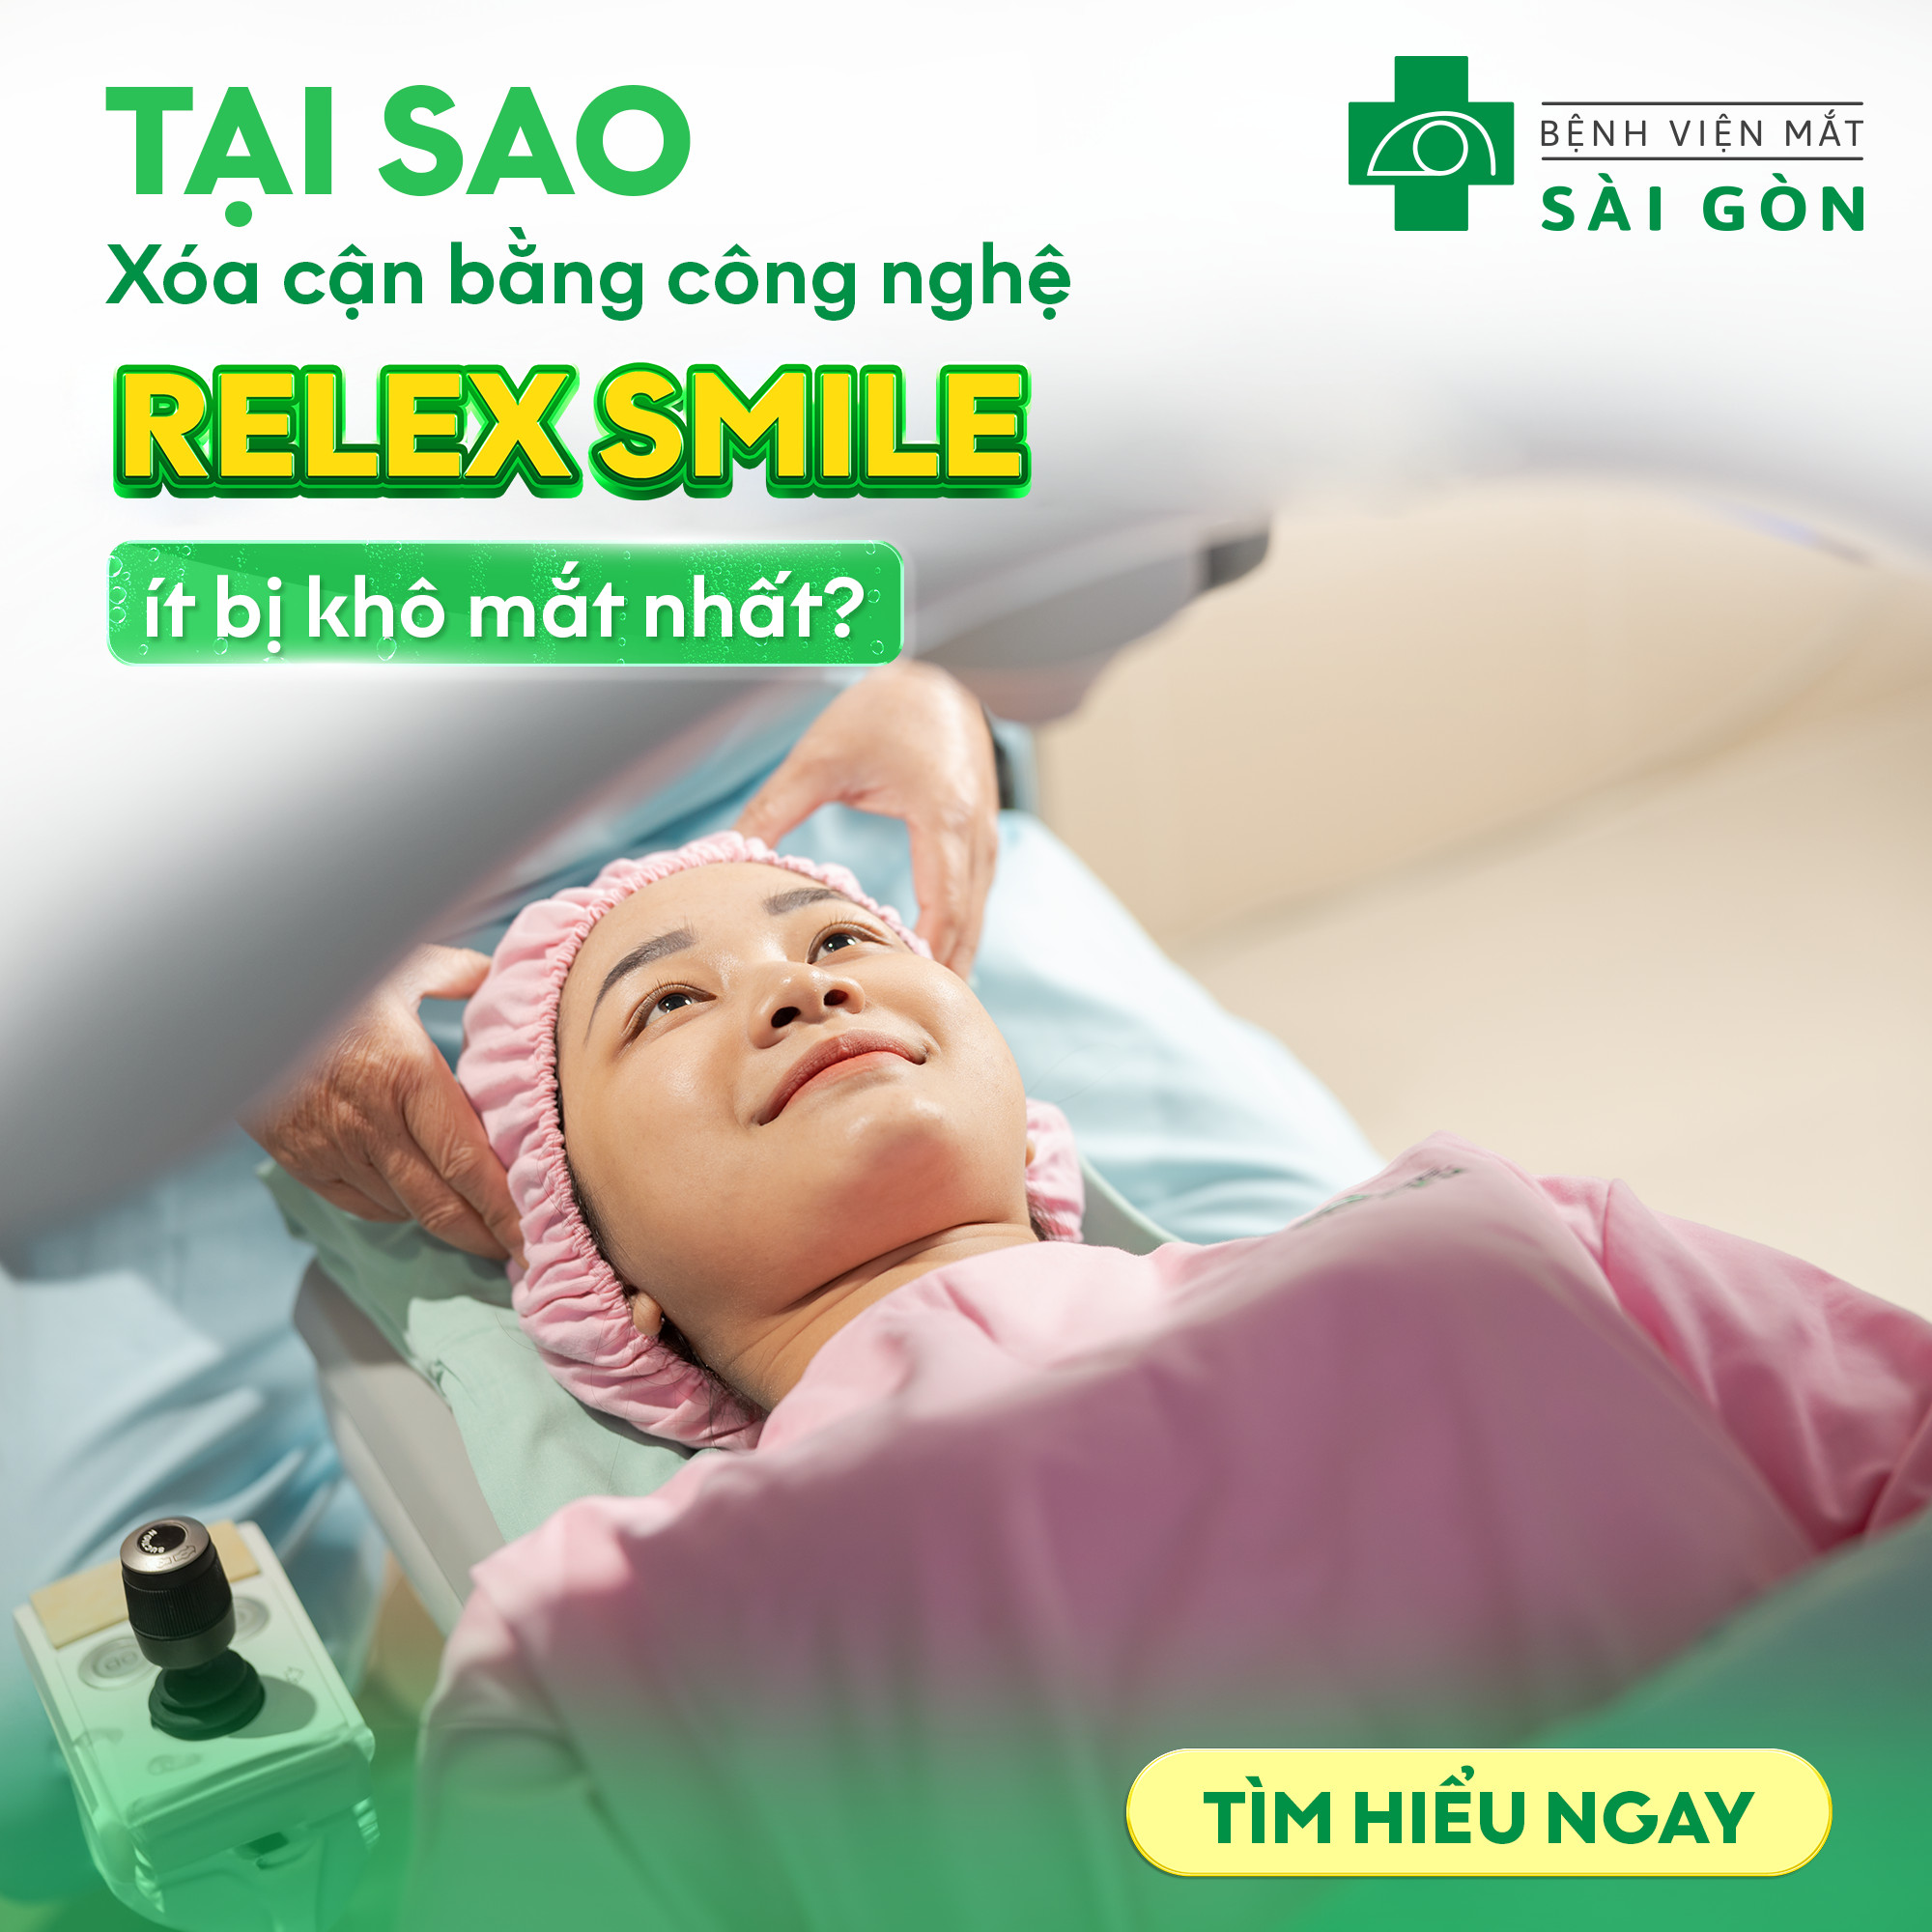 Tại sao phẫu thuật khúc xạ công nghệ ReLEx SMILE ít khô mắt nhất? 